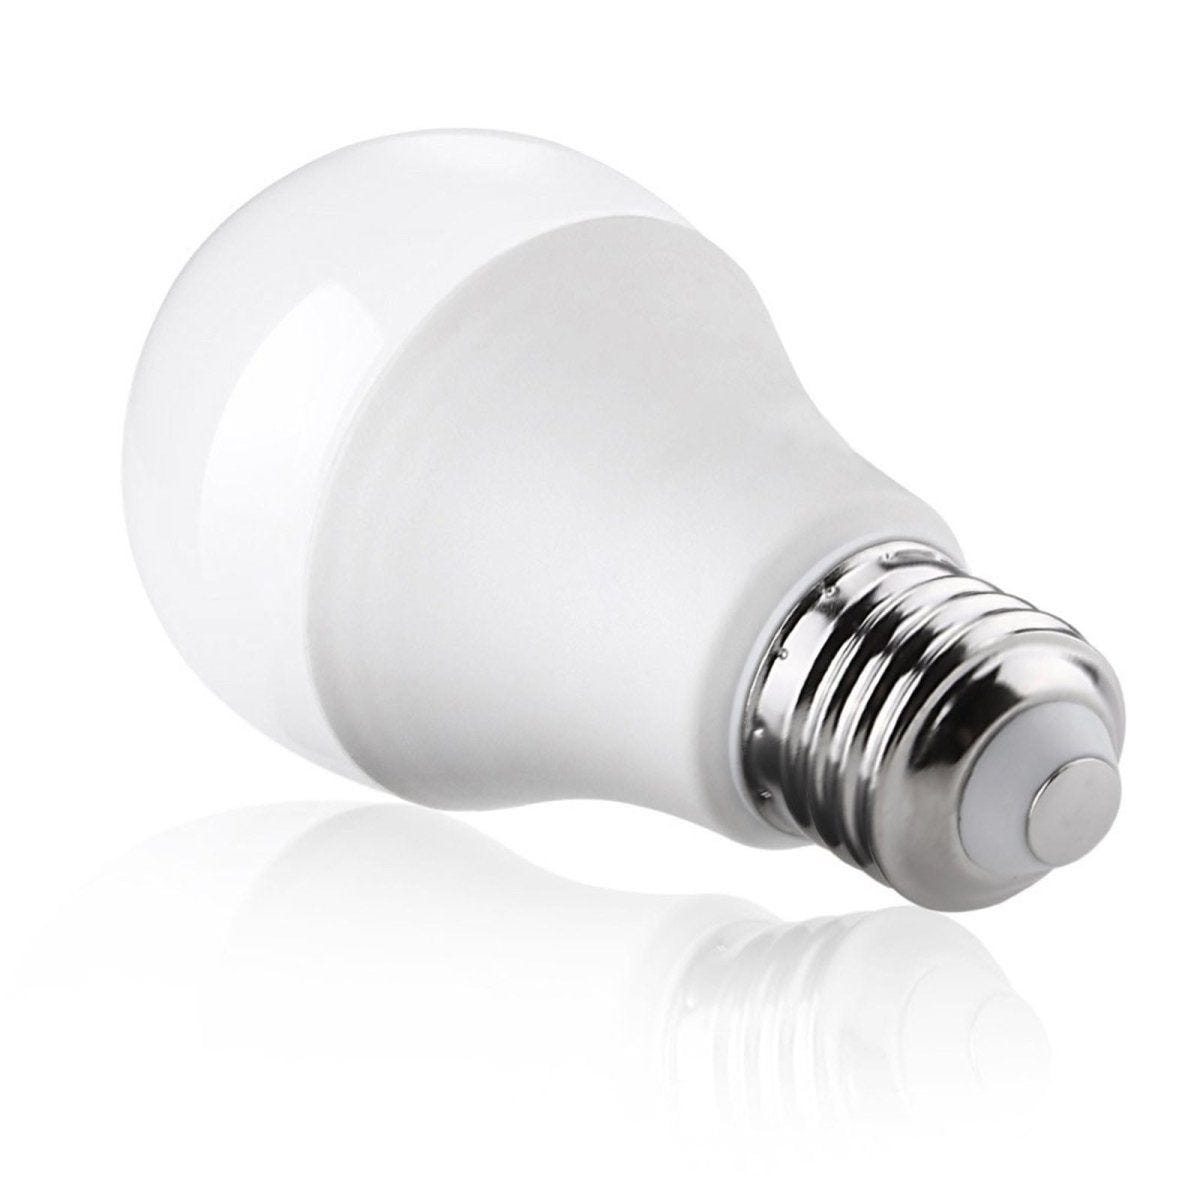 5 Ampoules LED E27 blanc froid 9W 220V A60 180° - Blanc Neutre 4200k -  5500k - Cdiscount Maison